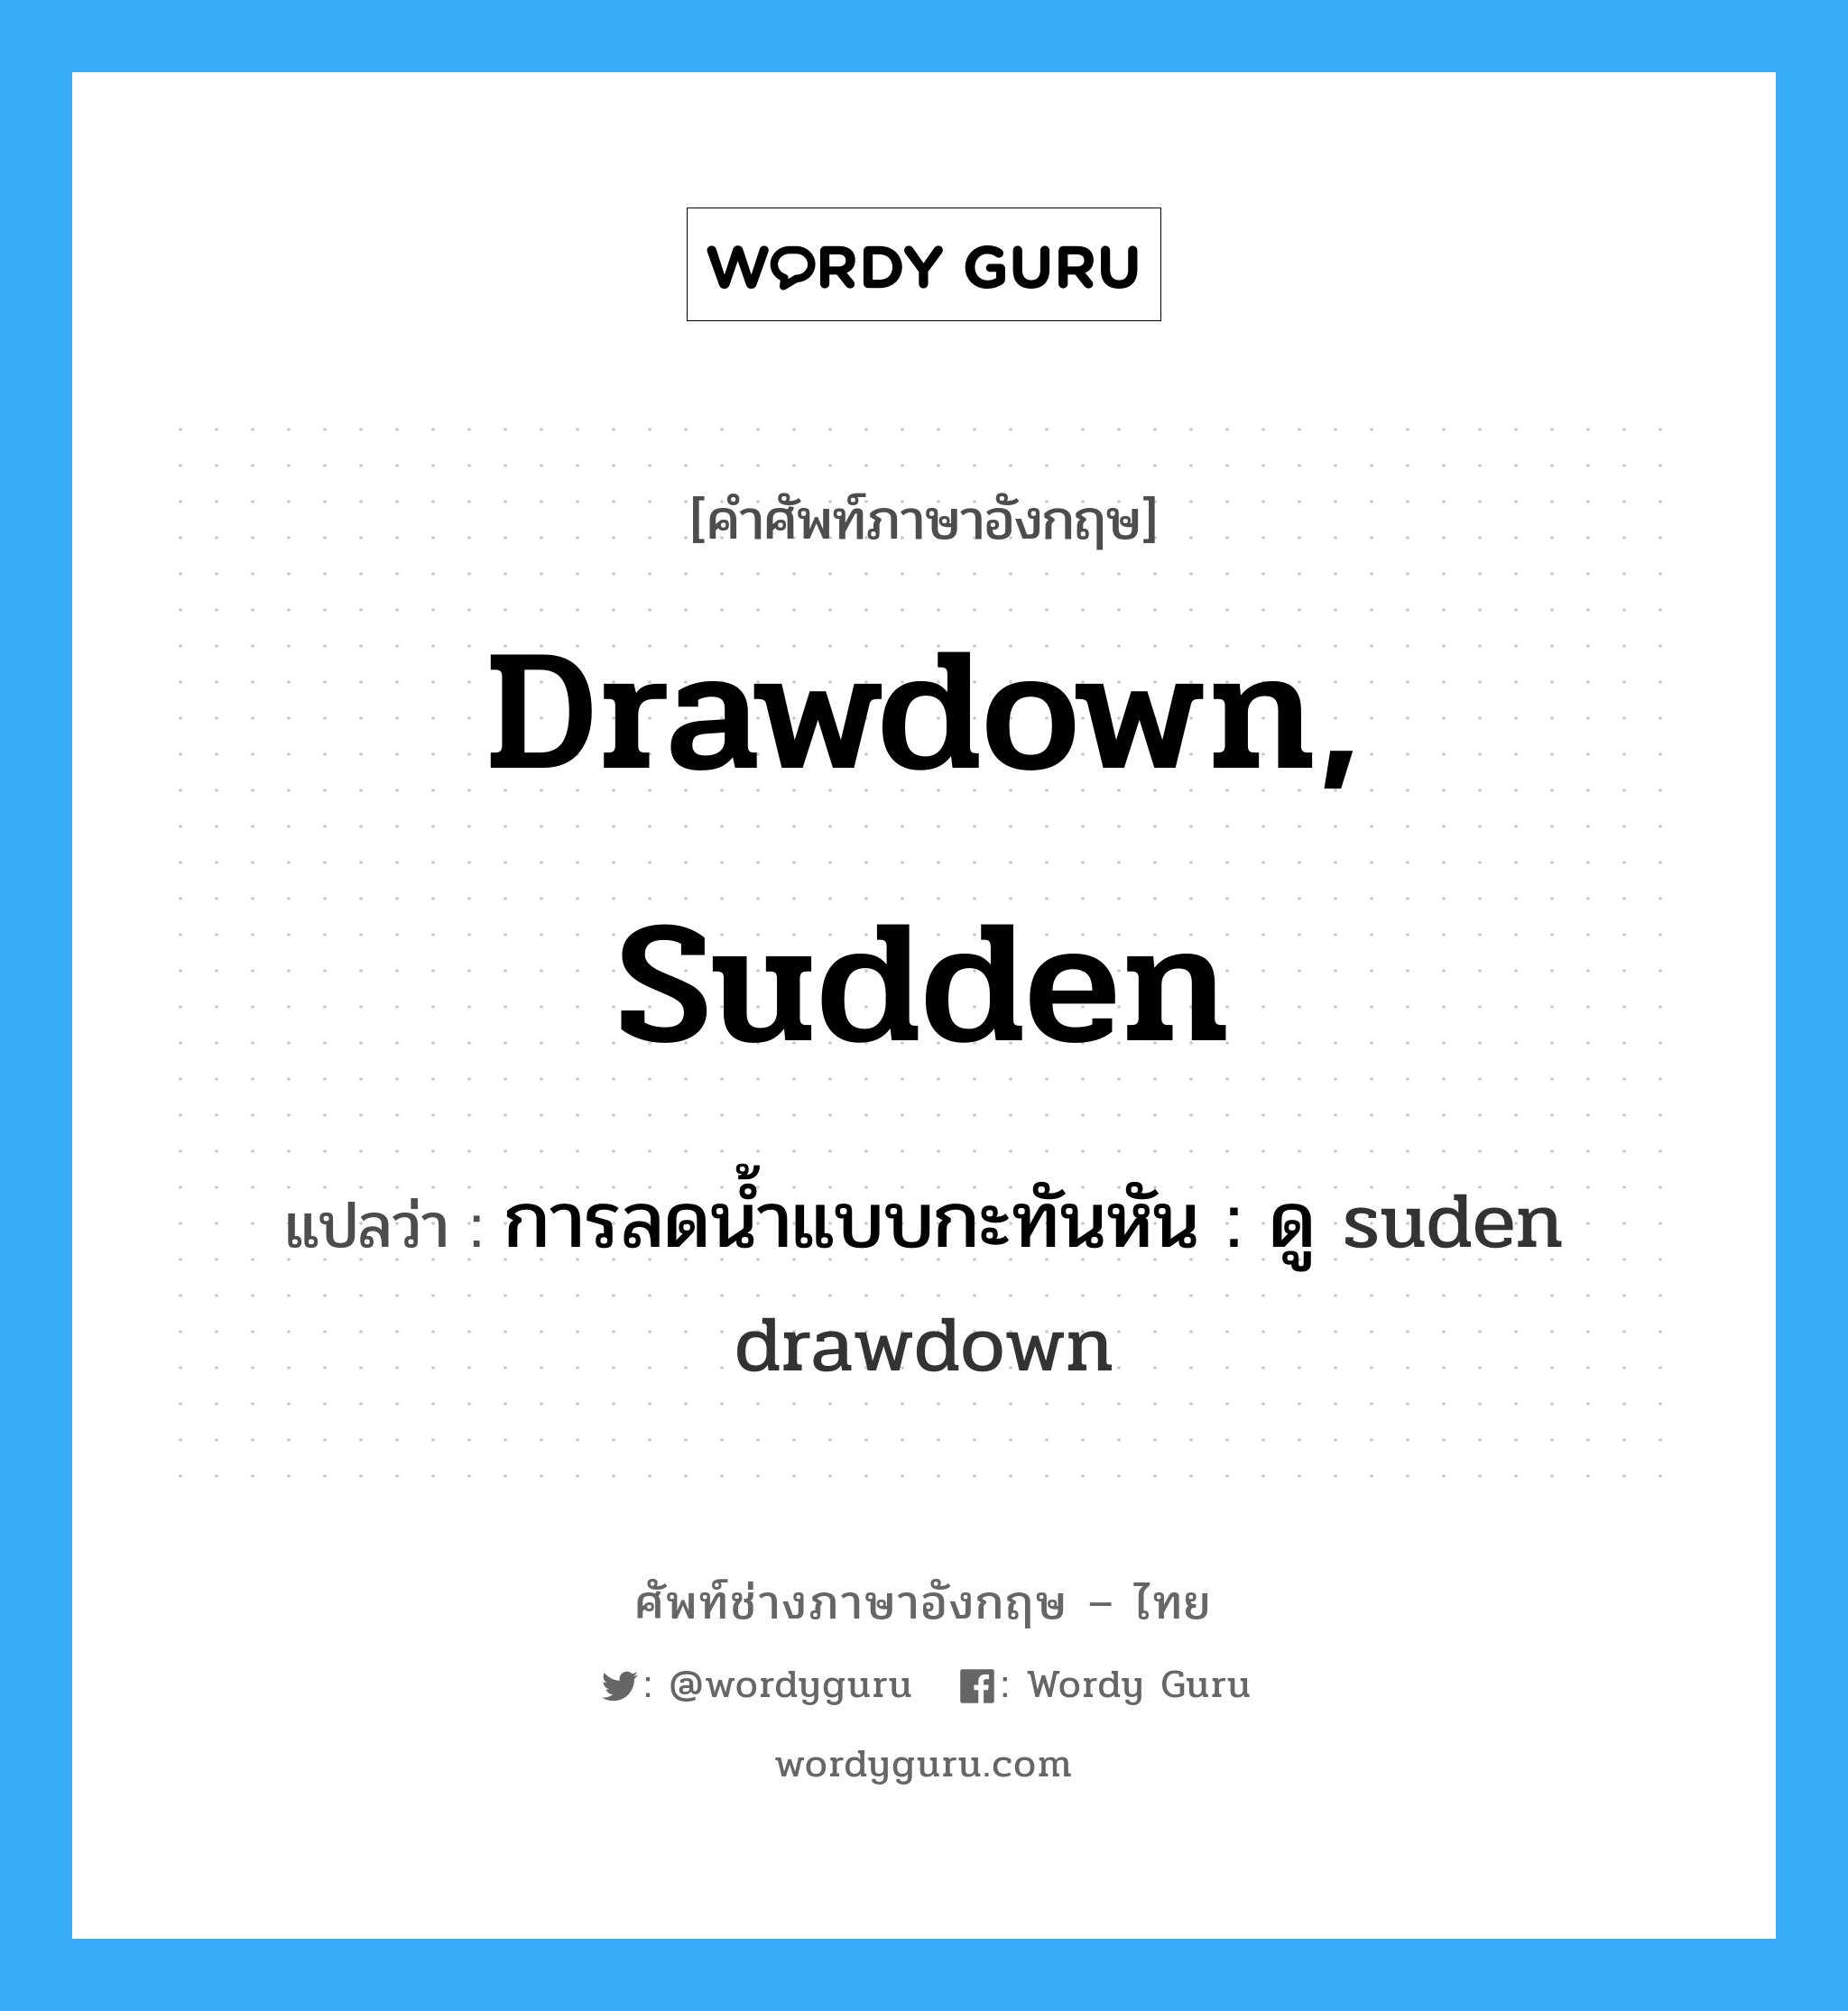 การลดน้ำแบบกะทันหัน : ดู suden drawdown ภาษาอังกฤษ?, คำศัพท์ช่างภาษาอังกฤษ - ไทย การลดน้ำแบบกะทันหัน : ดู suden drawdown คำศัพท์ภาษาอังกฤษ การลดน้ำแบบกะทันหัน : ดู suden drawdown แปลว่า drawdown, sudden